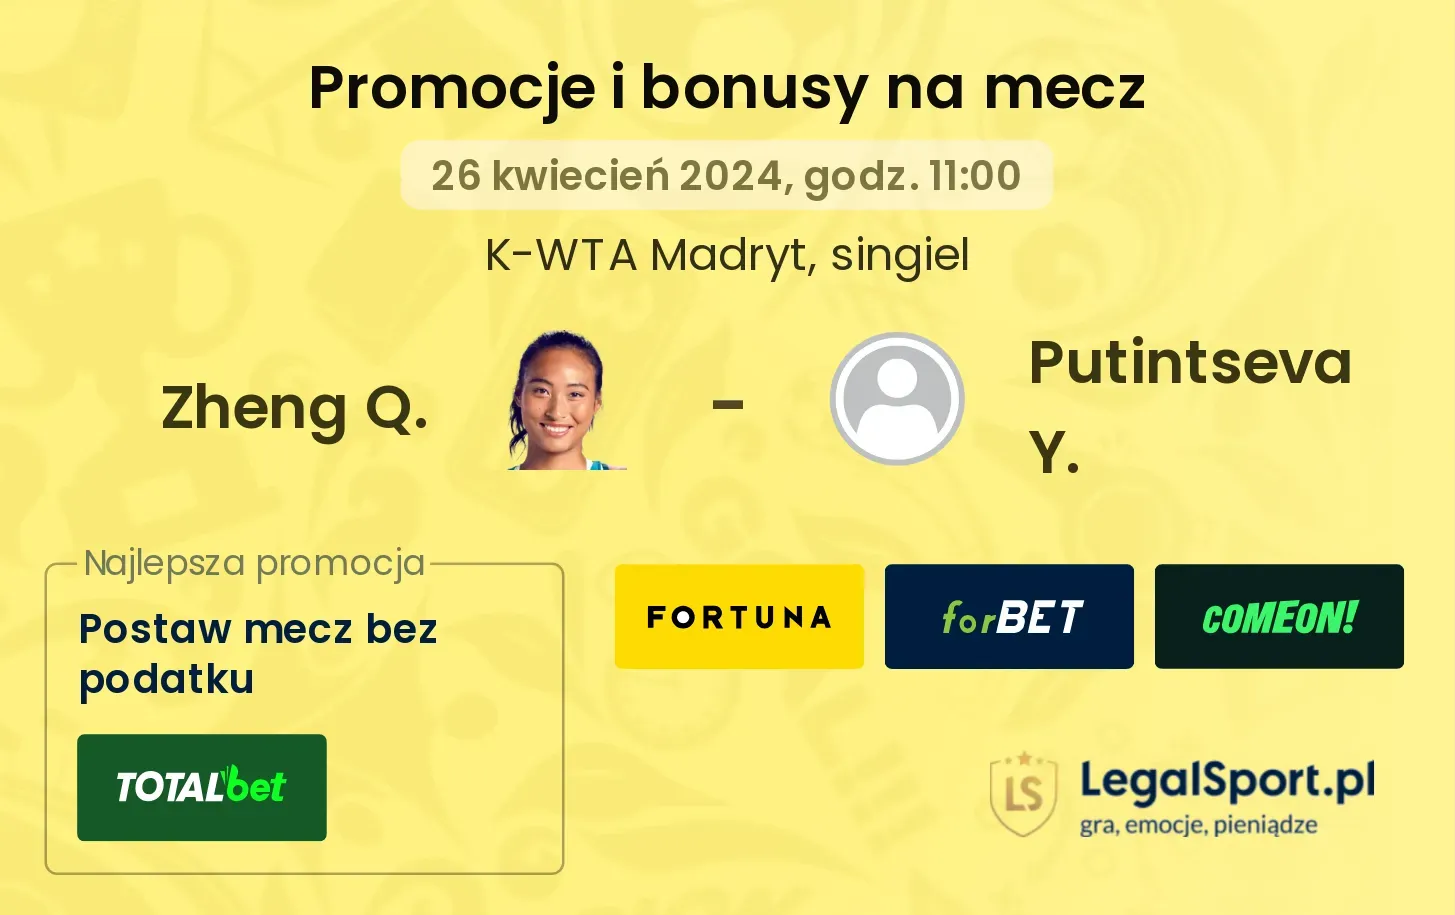 Zheng Q. - Putintseva Y. promocje bonusy na mecz